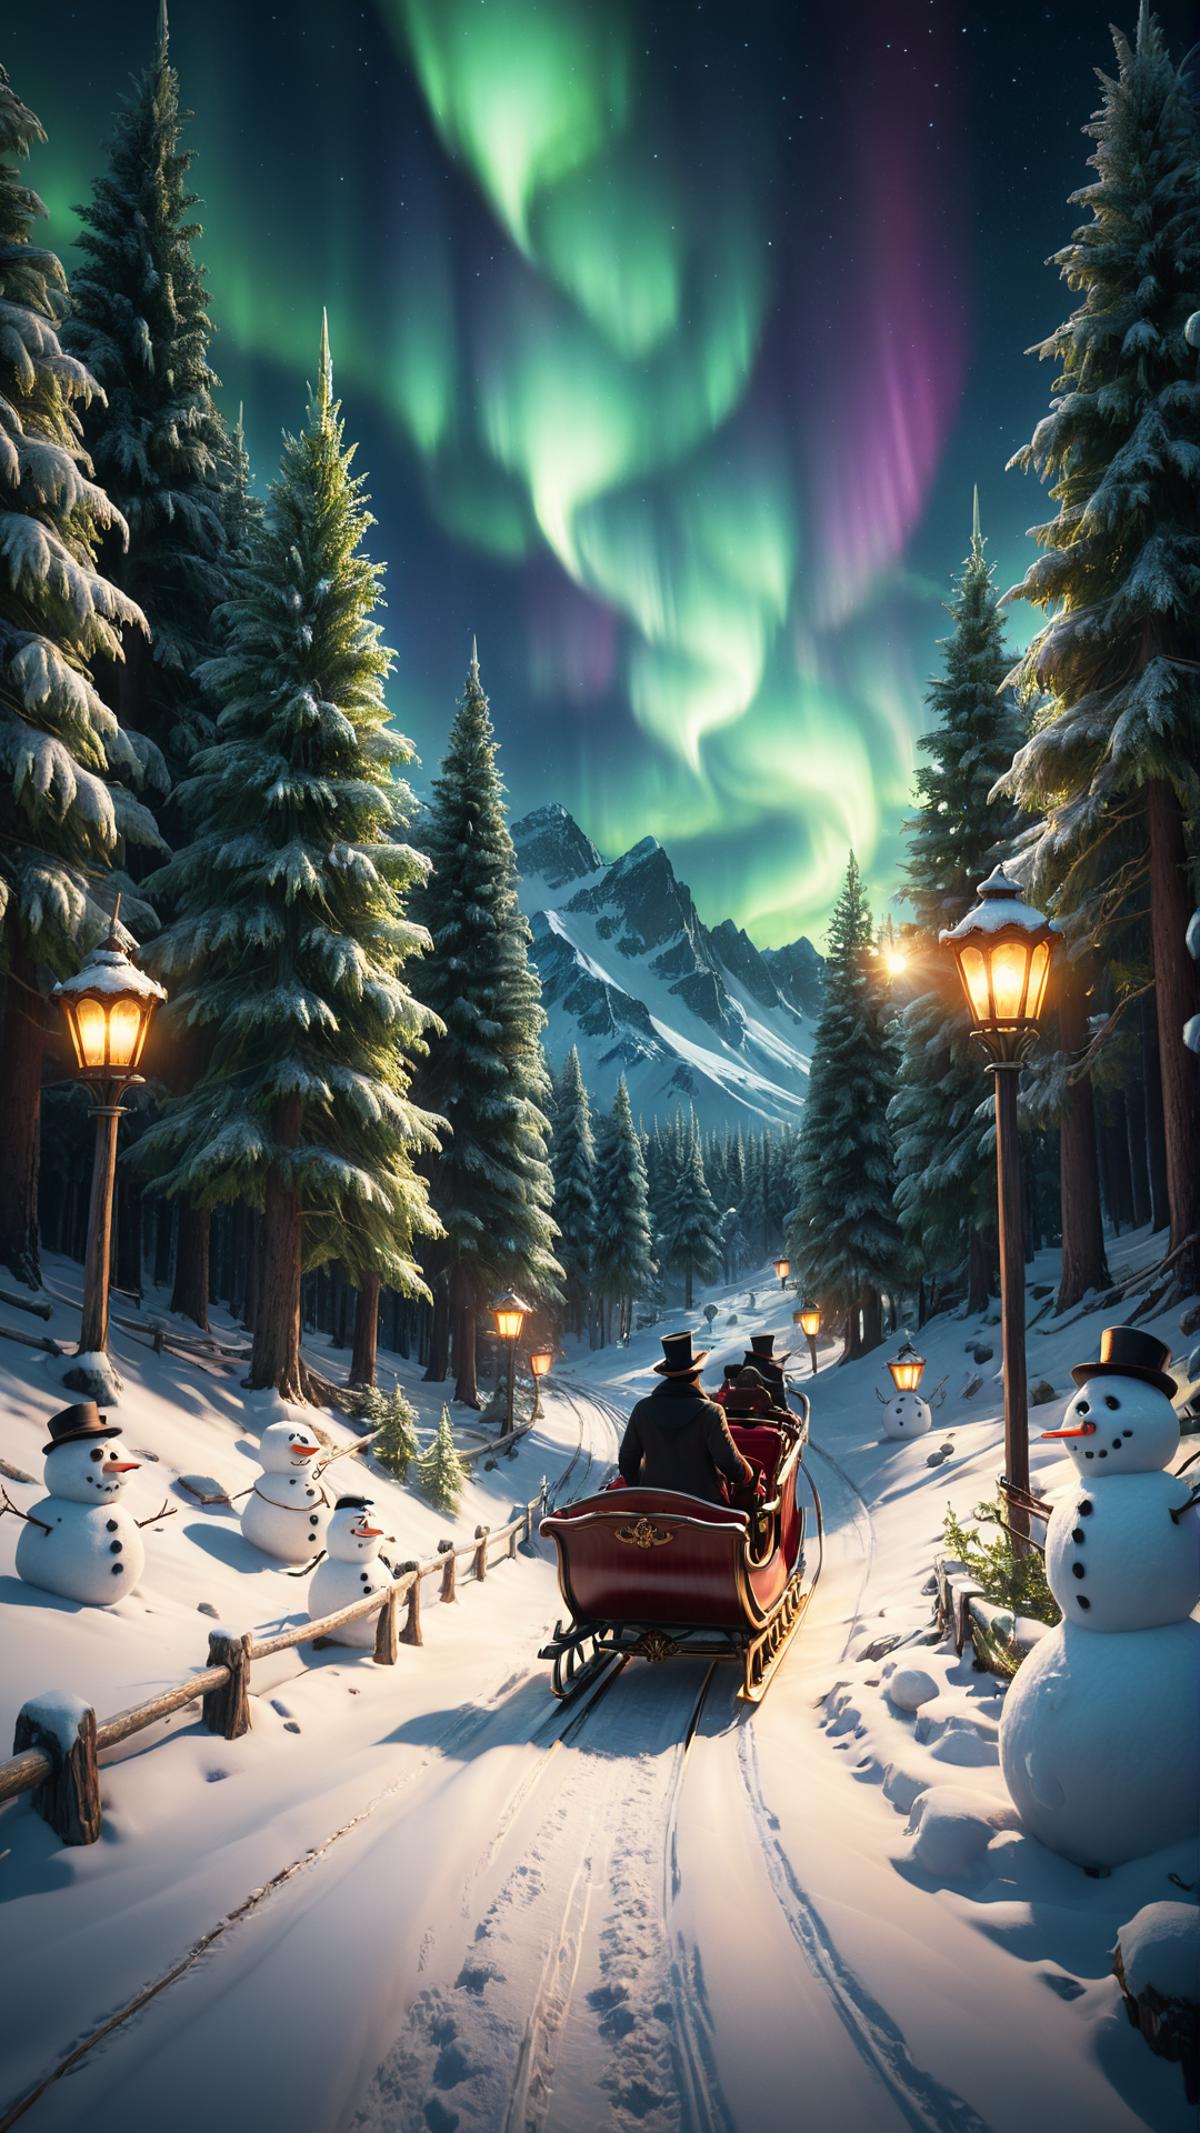 A Santa Claus Train Ride Through the Snowy Mountains